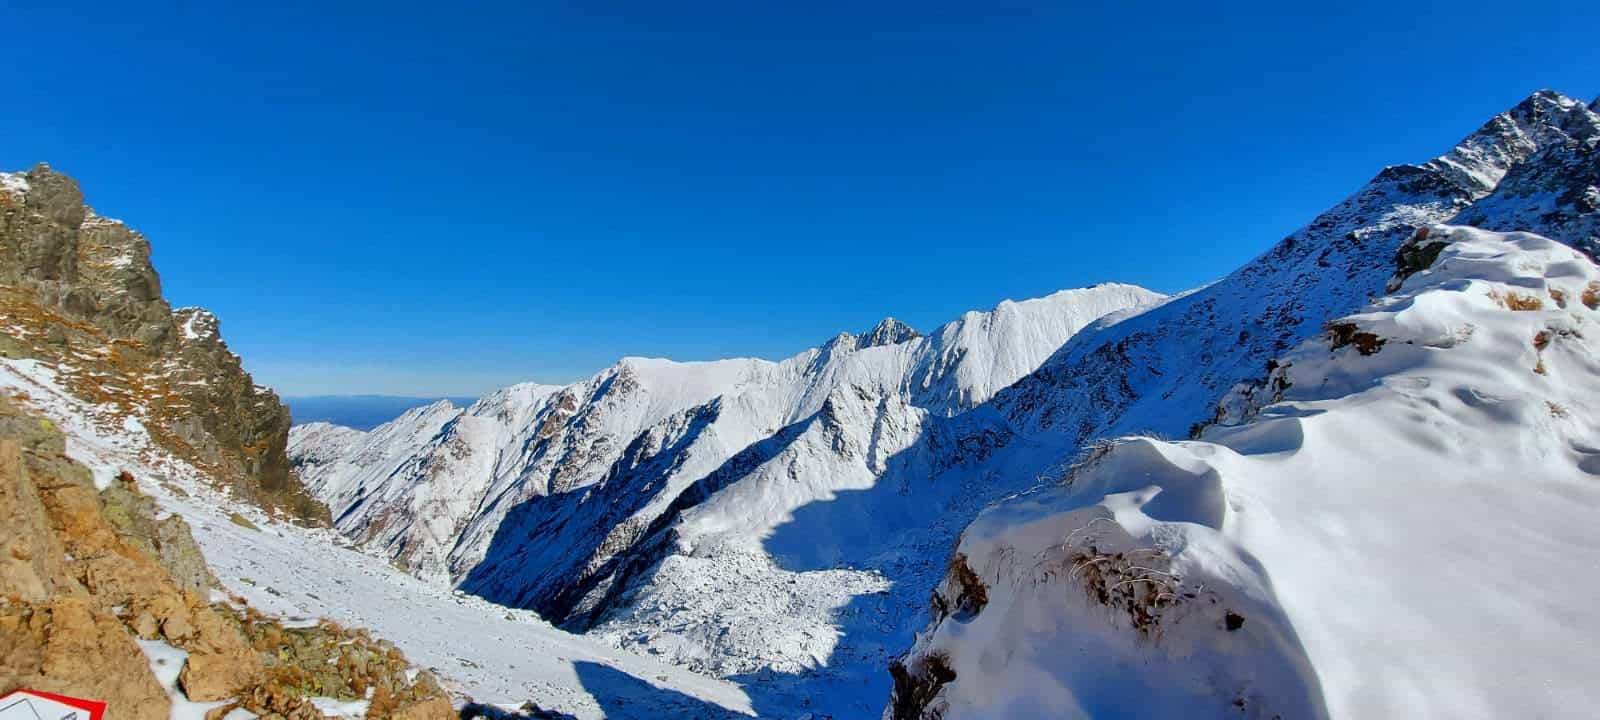 video s-a aşternut zăpada în munții făgăraș - temperaturi scăzute, umezeală și vânt